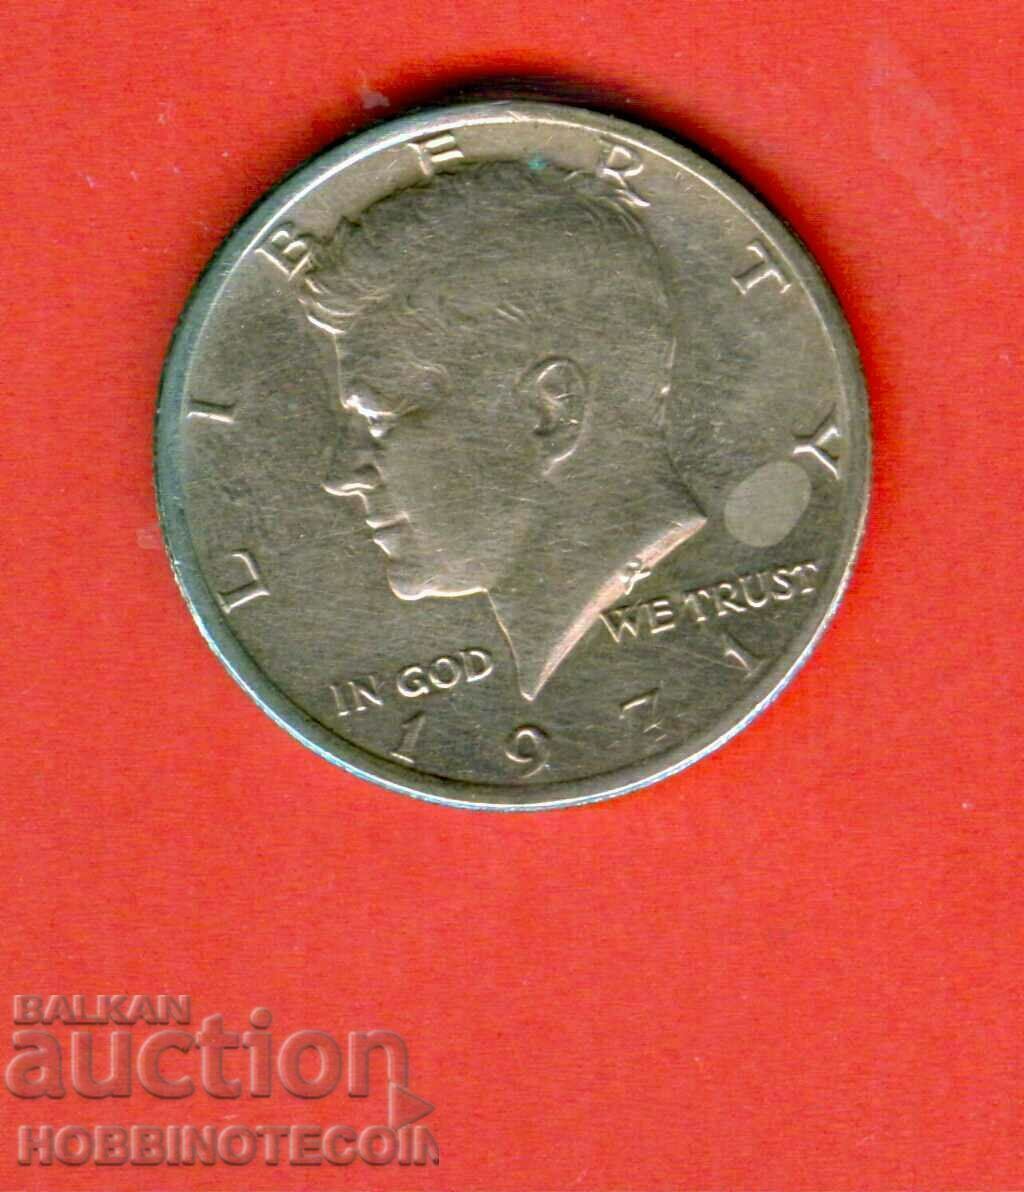 SUA SUA 50 cenți 0,50 $ 1/2 $ emisiune 1971 KENNEDY